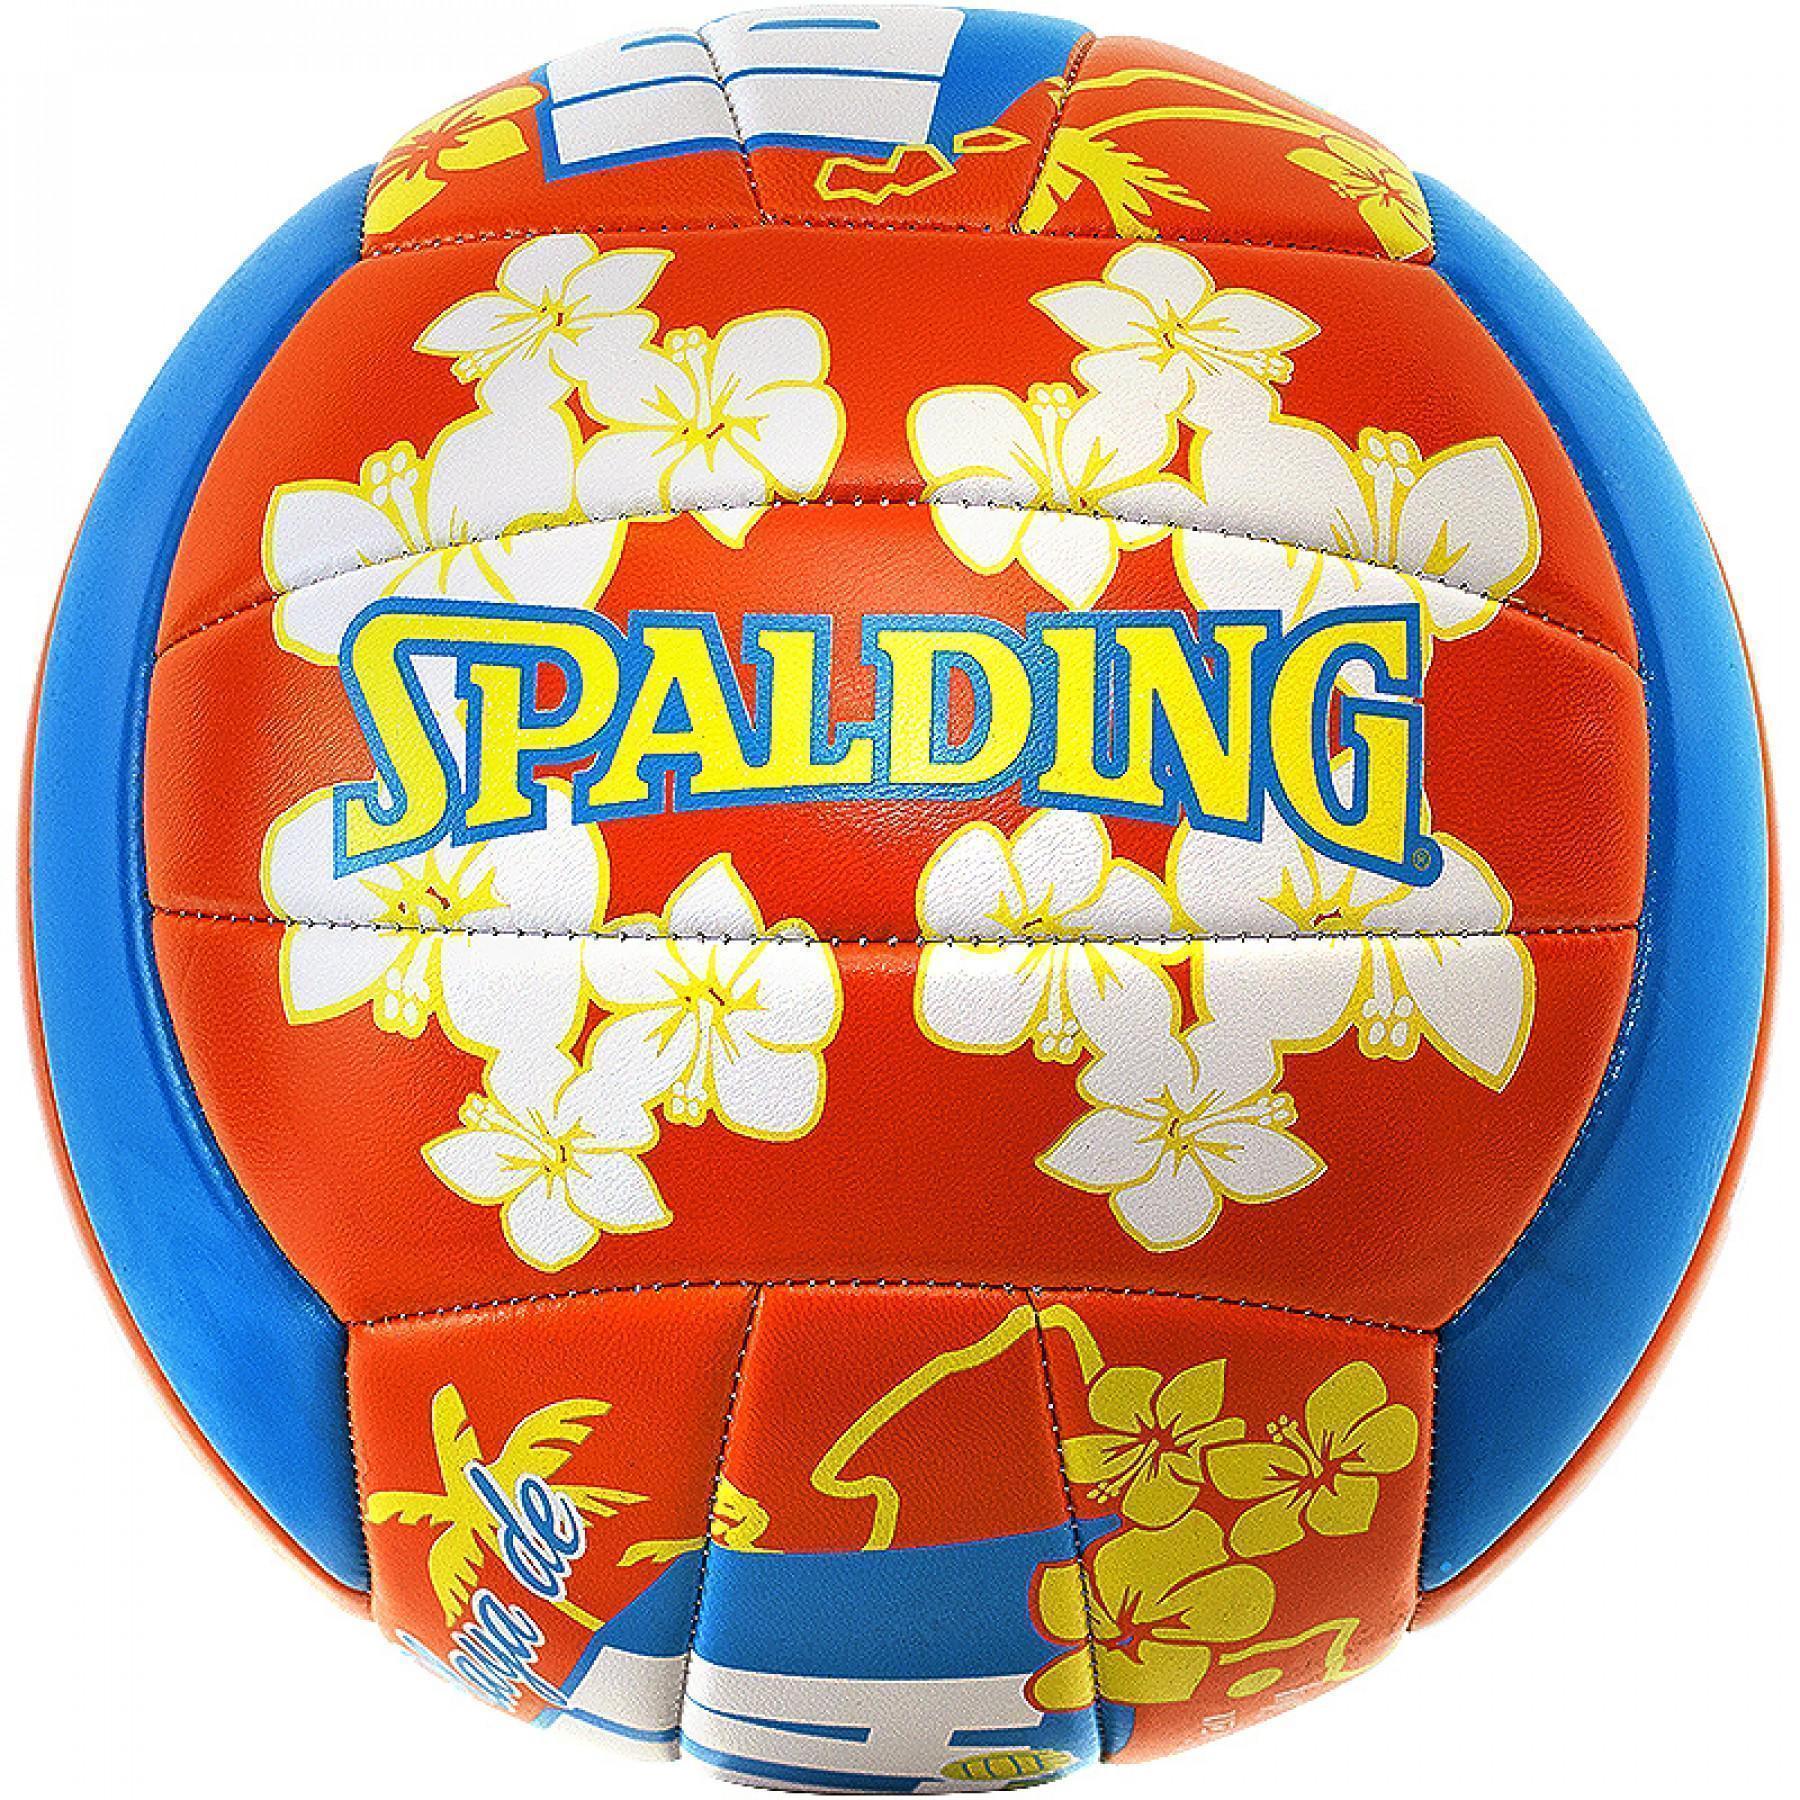 Balon Spalding beach volley Ibiza